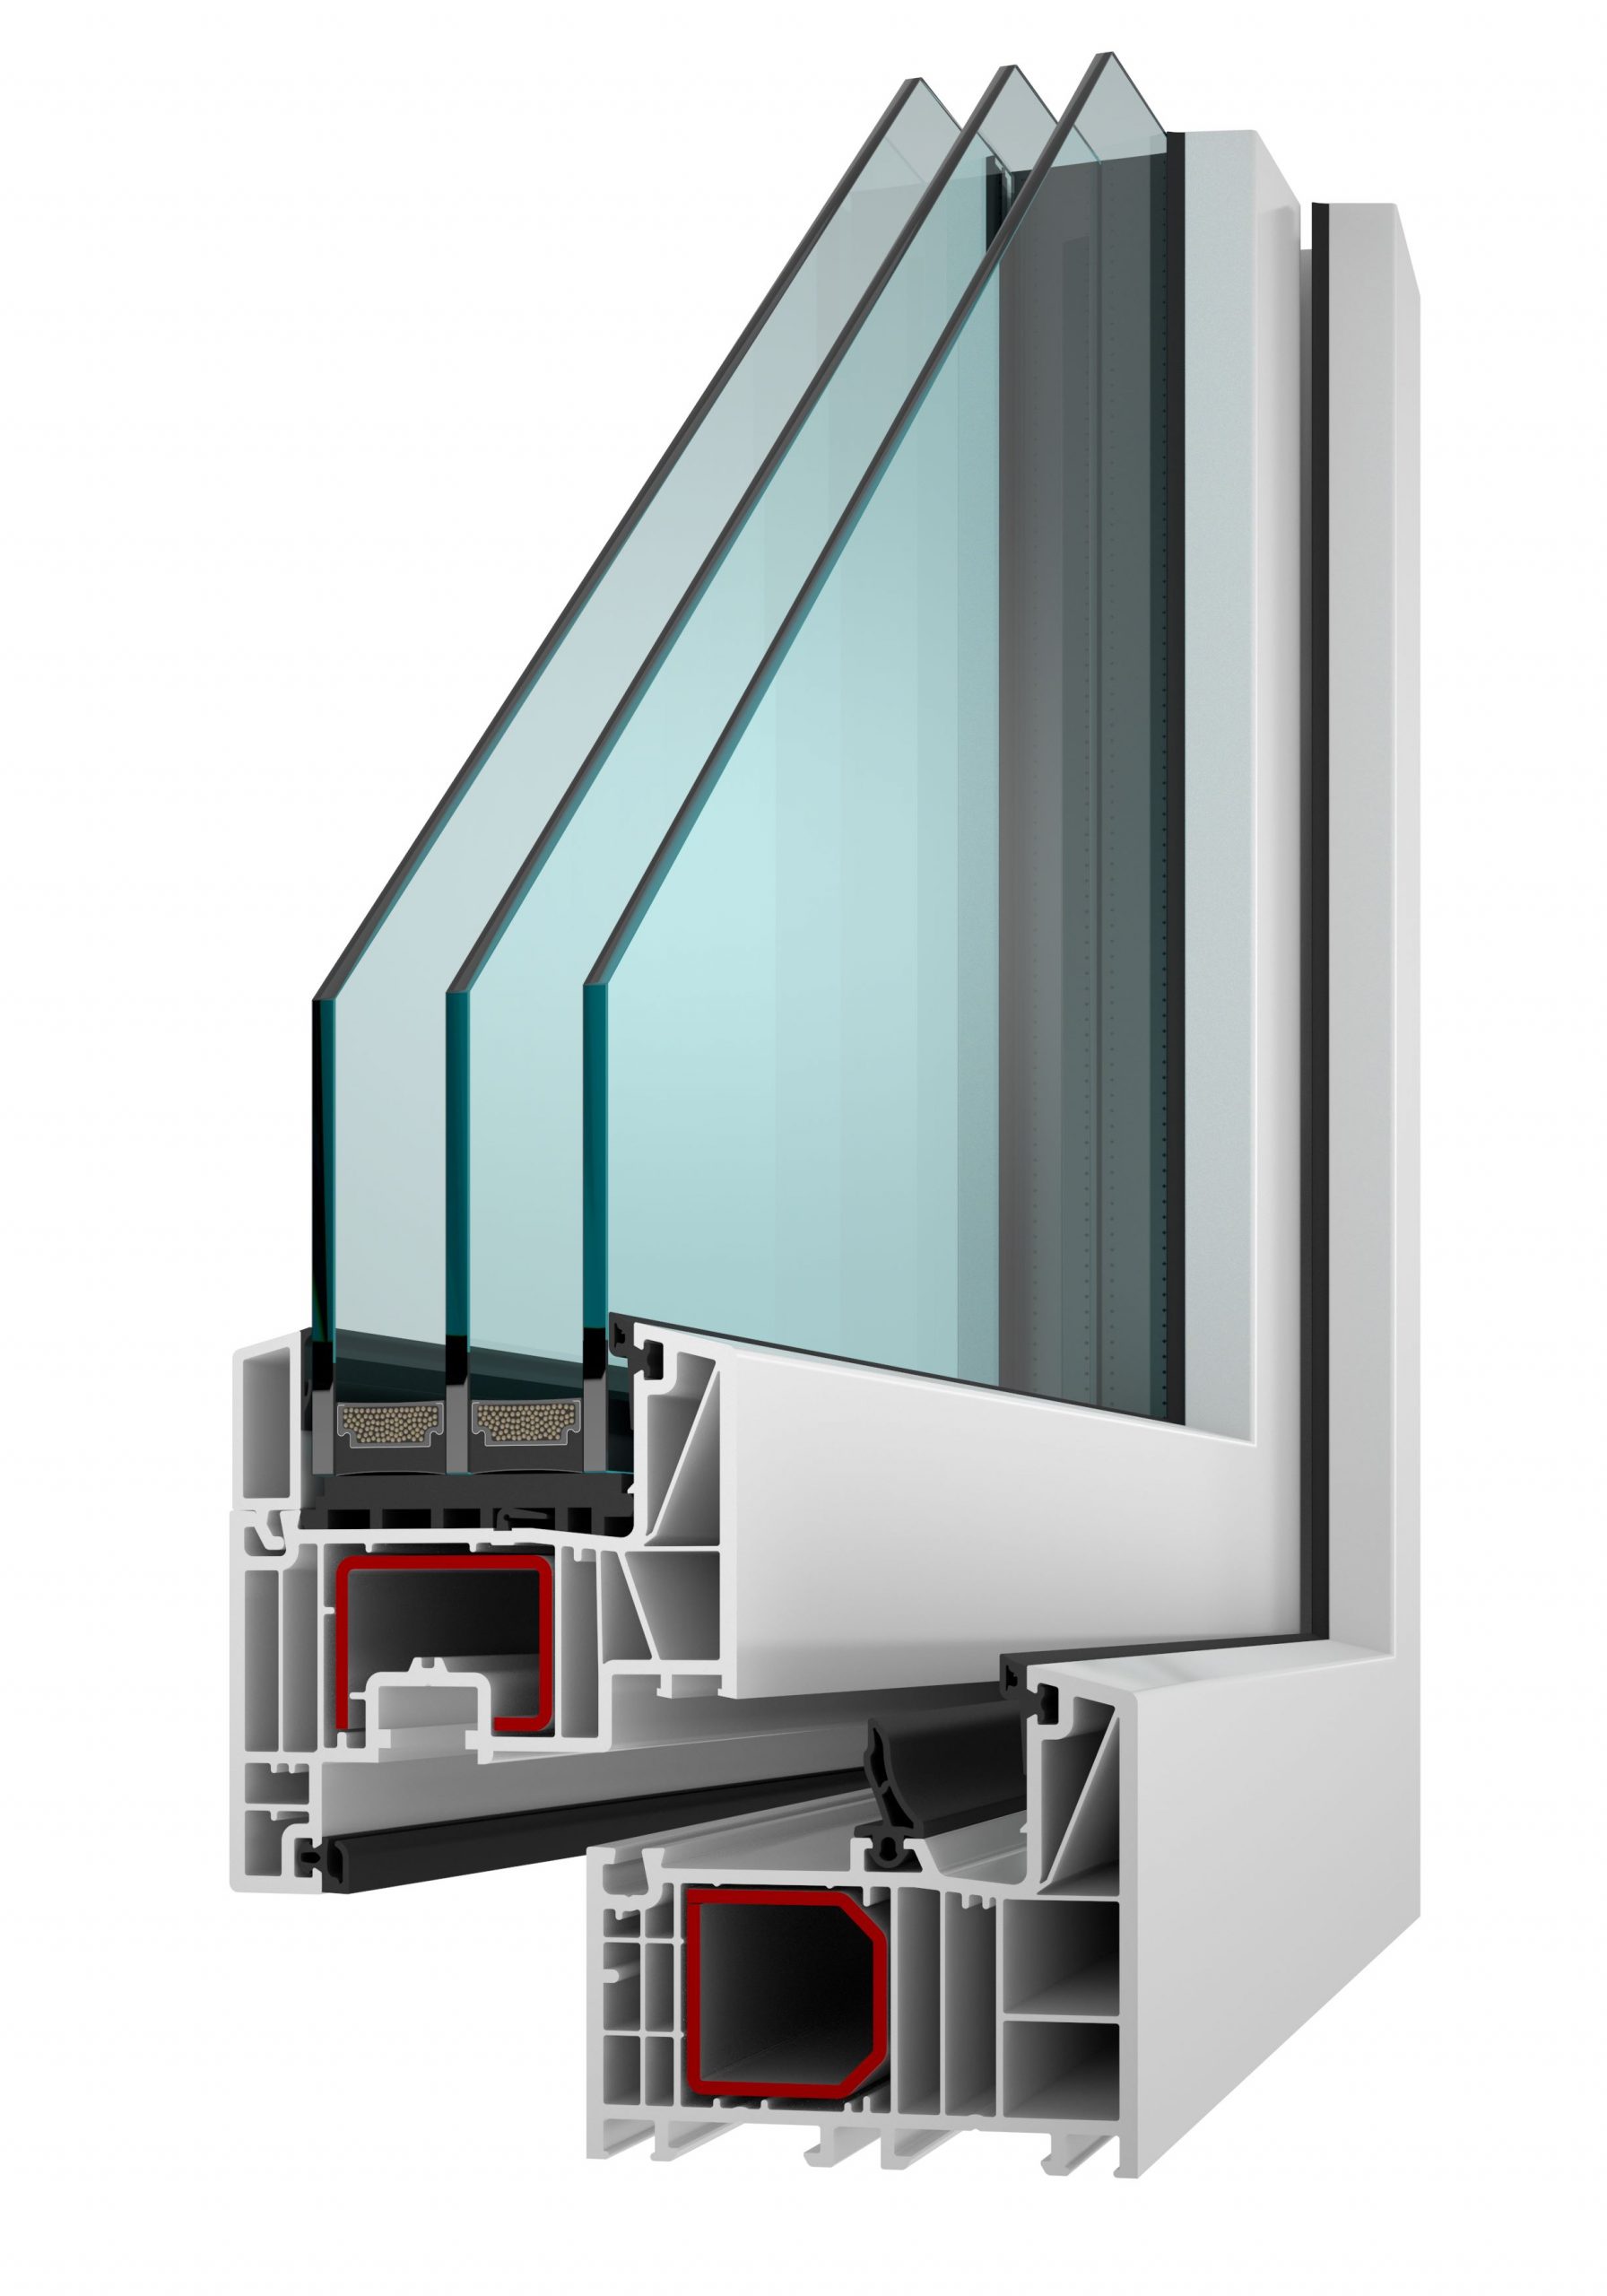 Plastové okno INCON Komfort EVO so stavebnou hĺbkou 82 mm má výborné tepelnoizolačné vlastnosti.